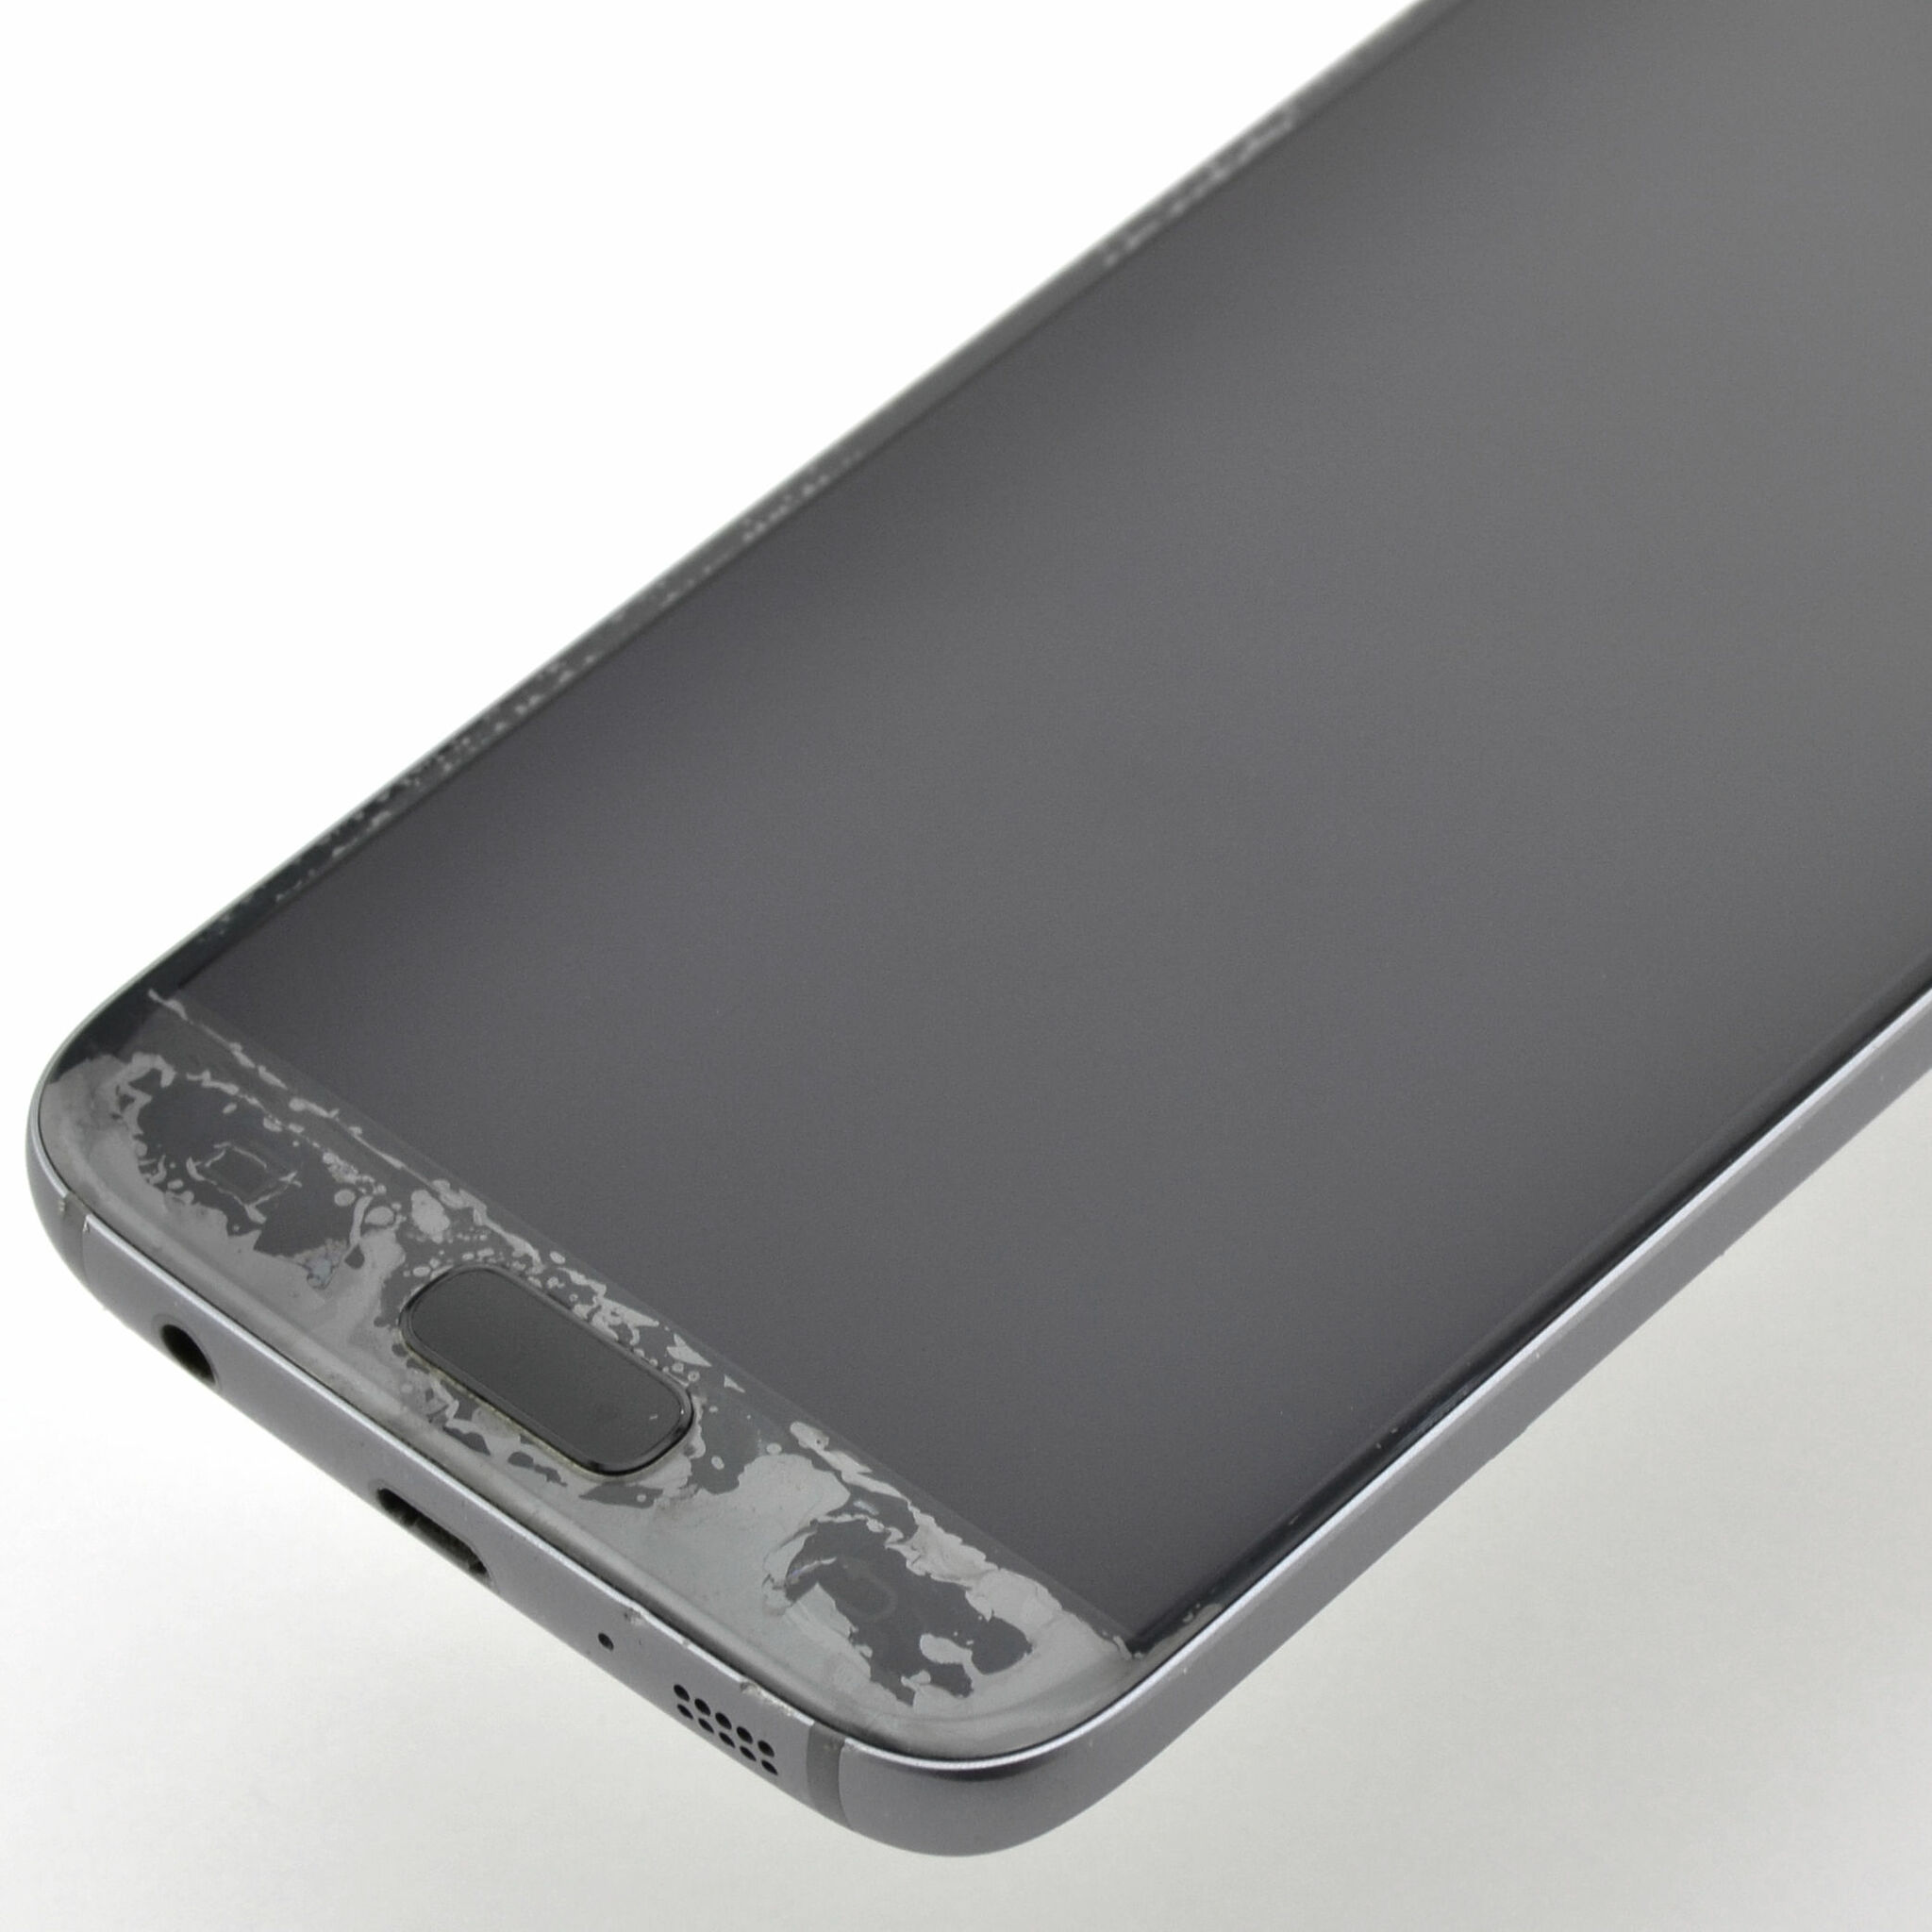 Samsung Galaxy S7 32GB Svart - BEG - OKEJ SKICK - OLÅST